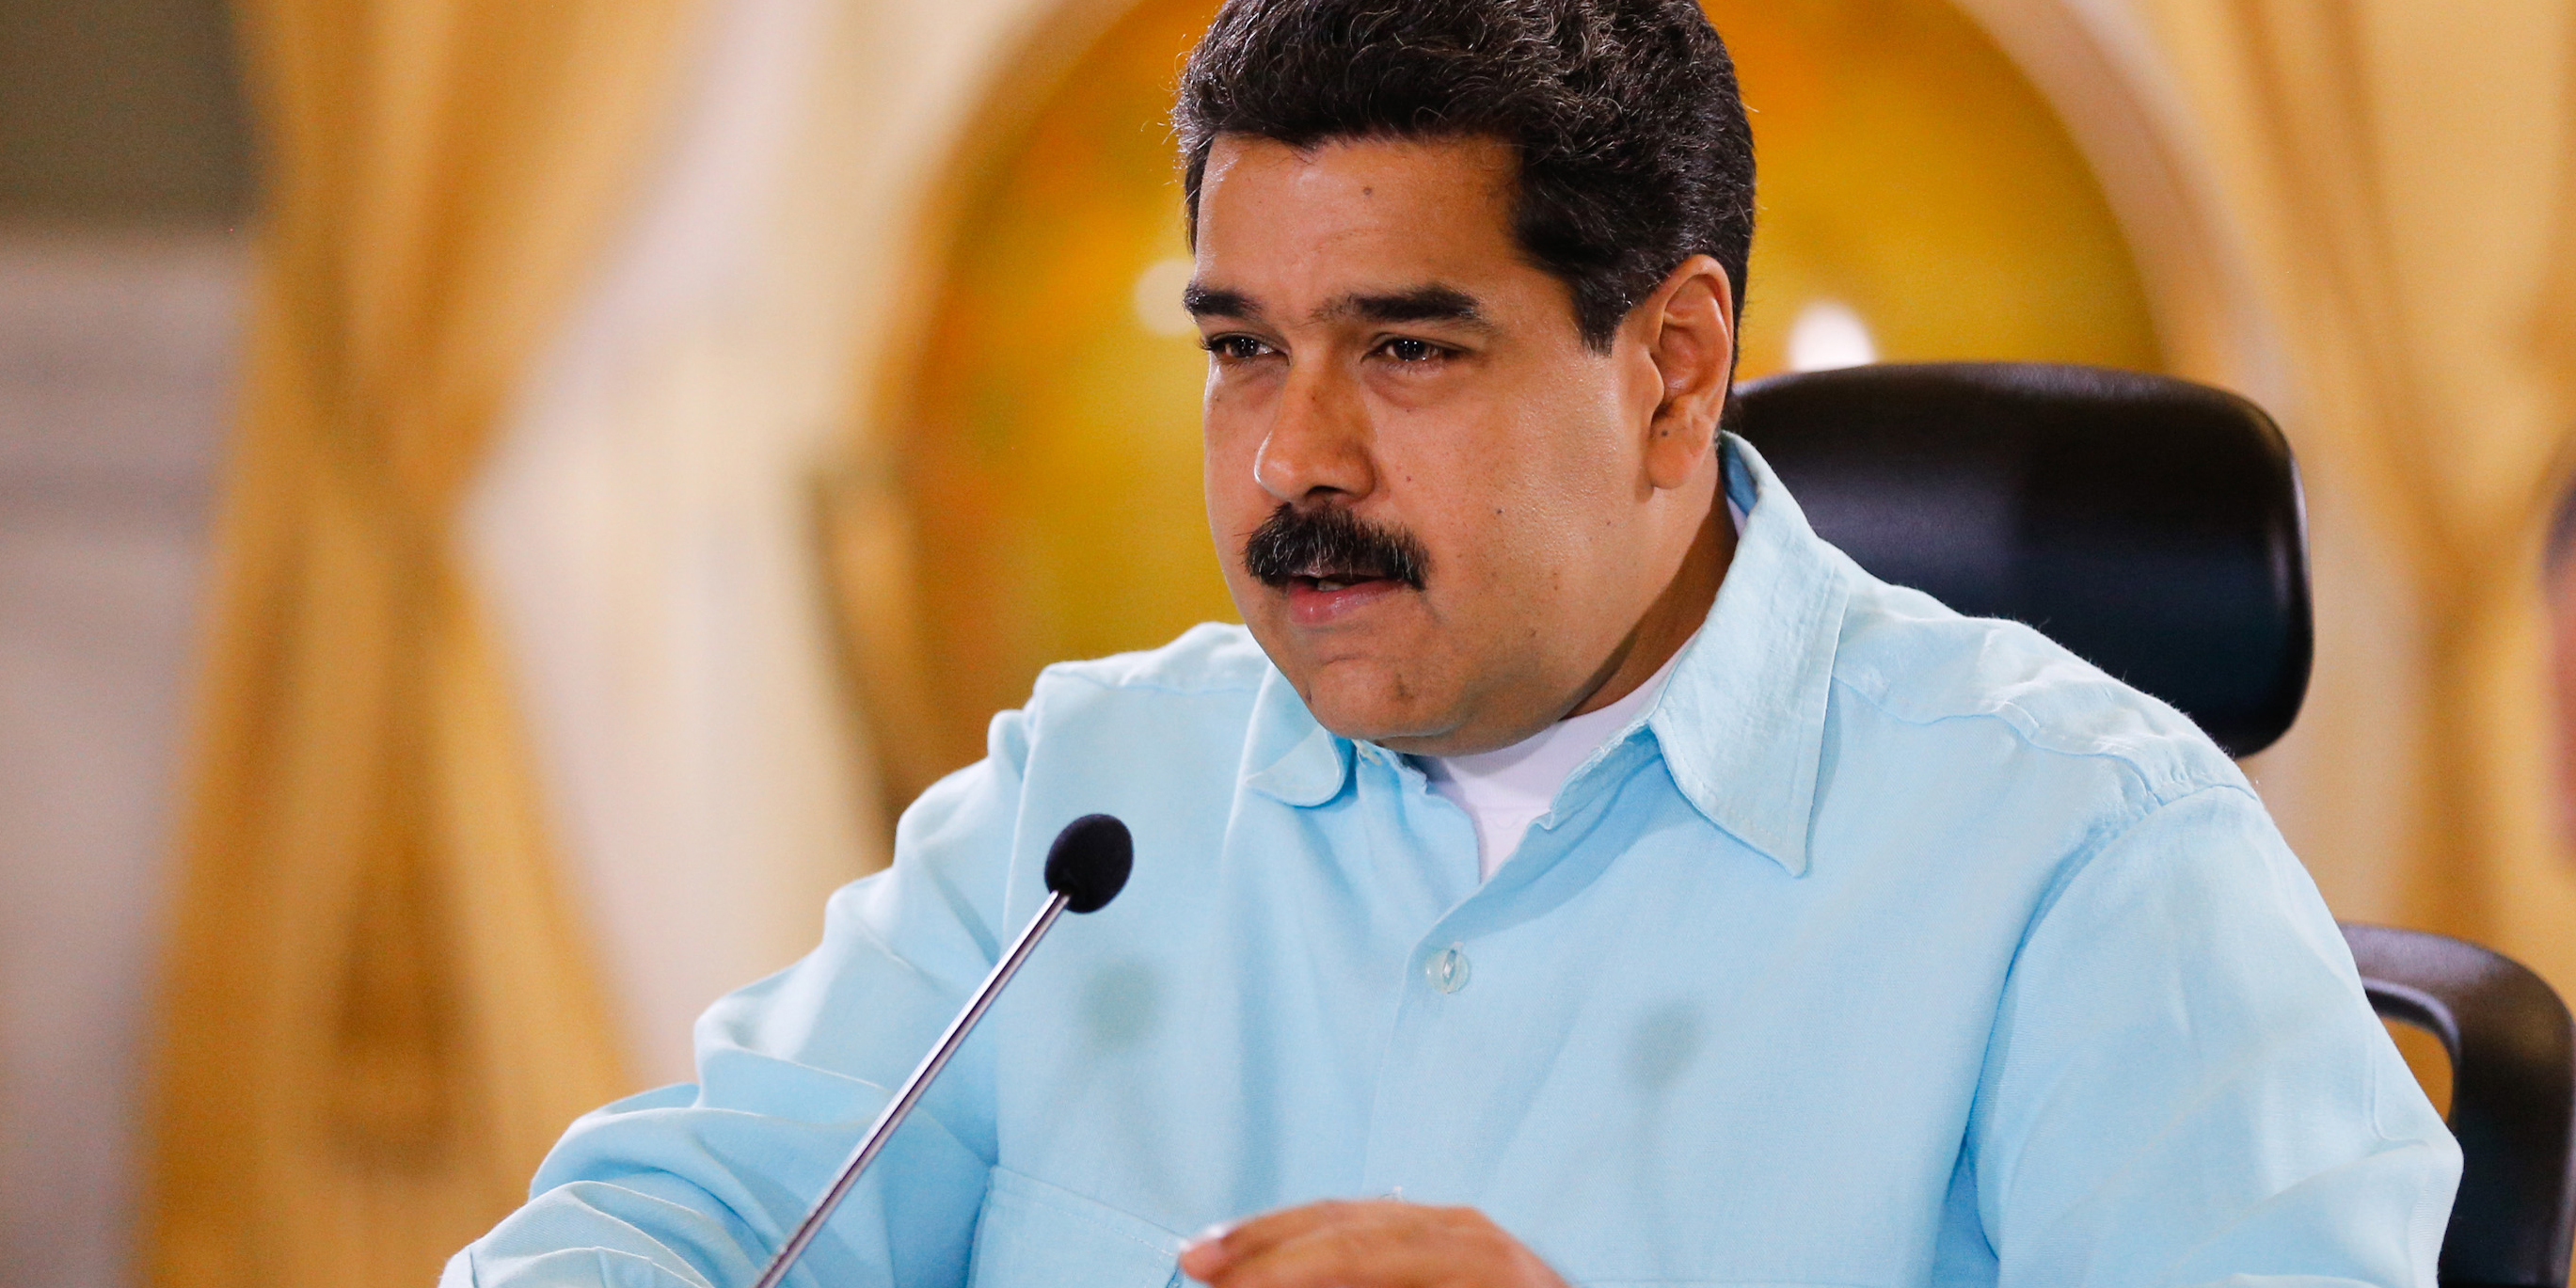 El 16 de junio pasado, el presidente Nicolás Maduro había resaltado la postura venezolana de tener relaciones respetuosas con EE.UU.